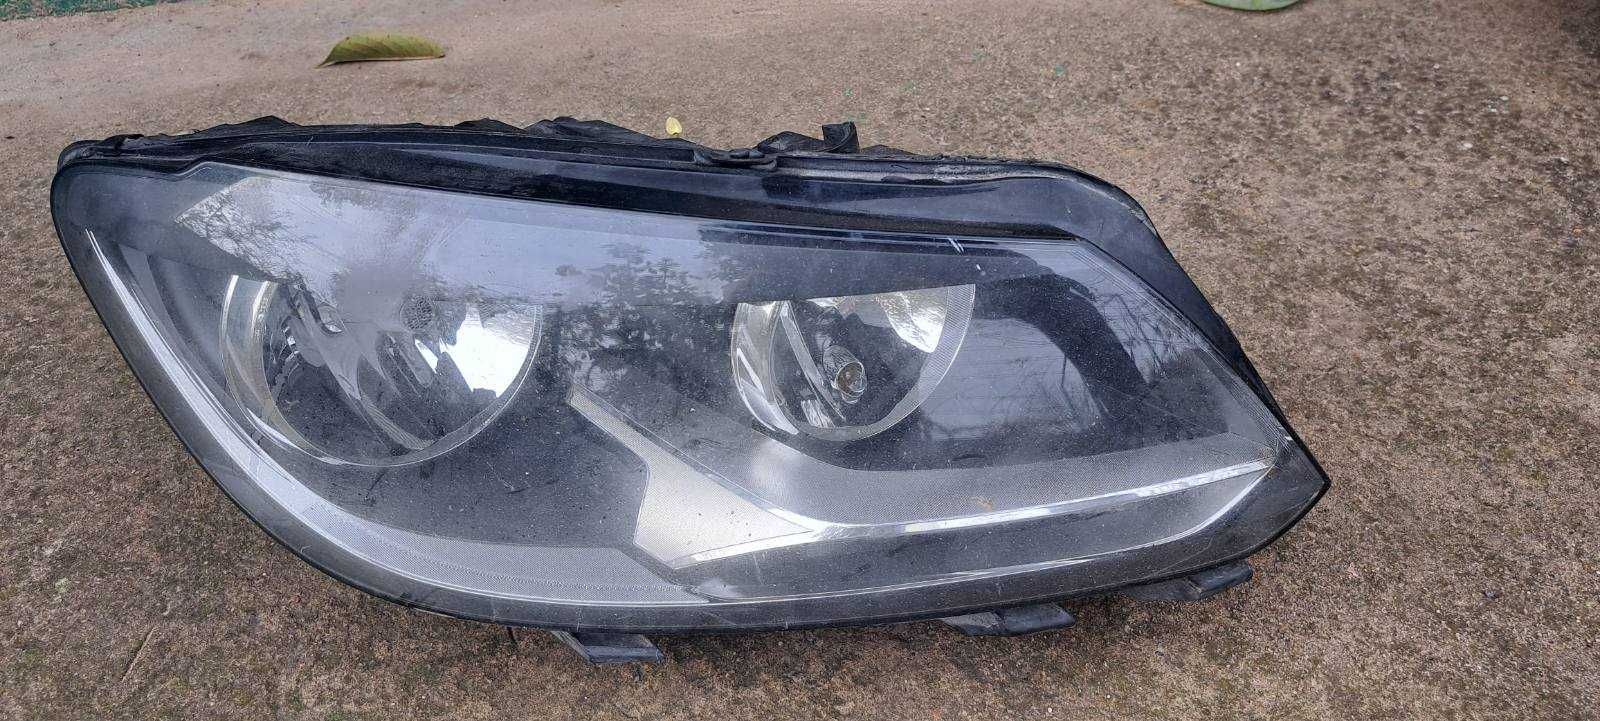 Фара правая Volkswagen touran caddy 2010-2015 сломано одно крепление